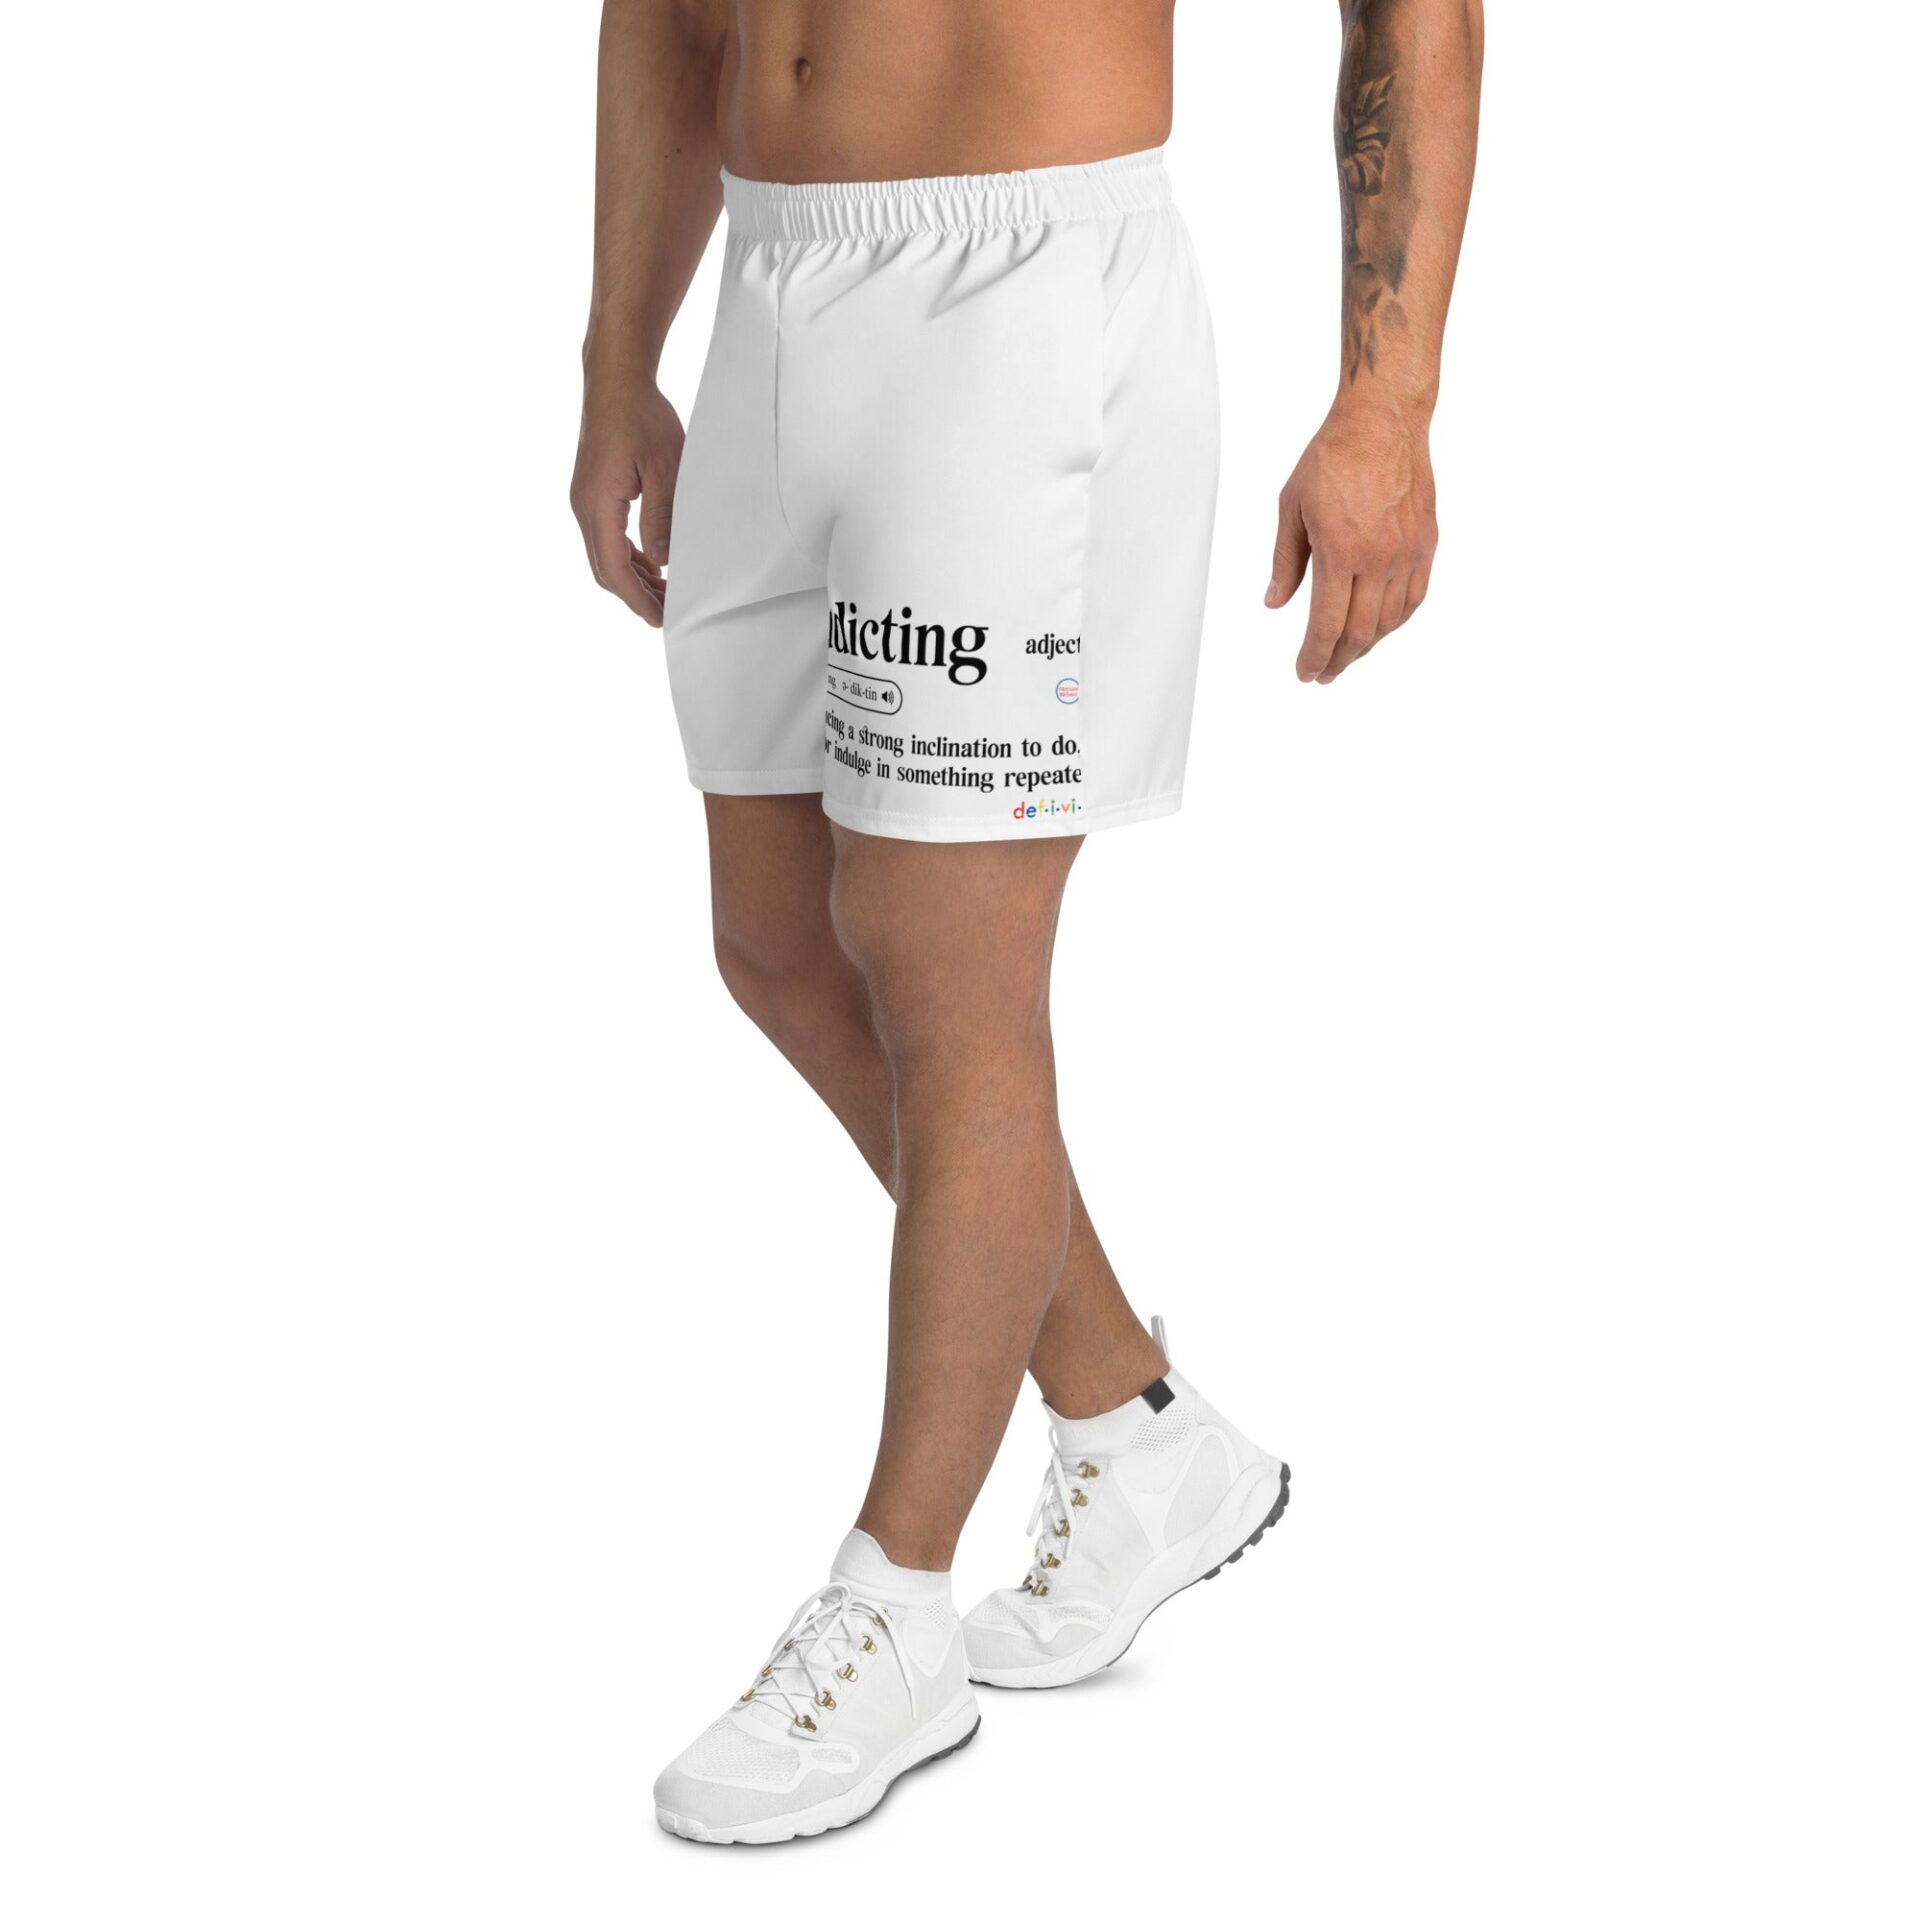 all-over-print-mens-recycled-athletic-shorts-white-left-645e72fe5015b.jpg